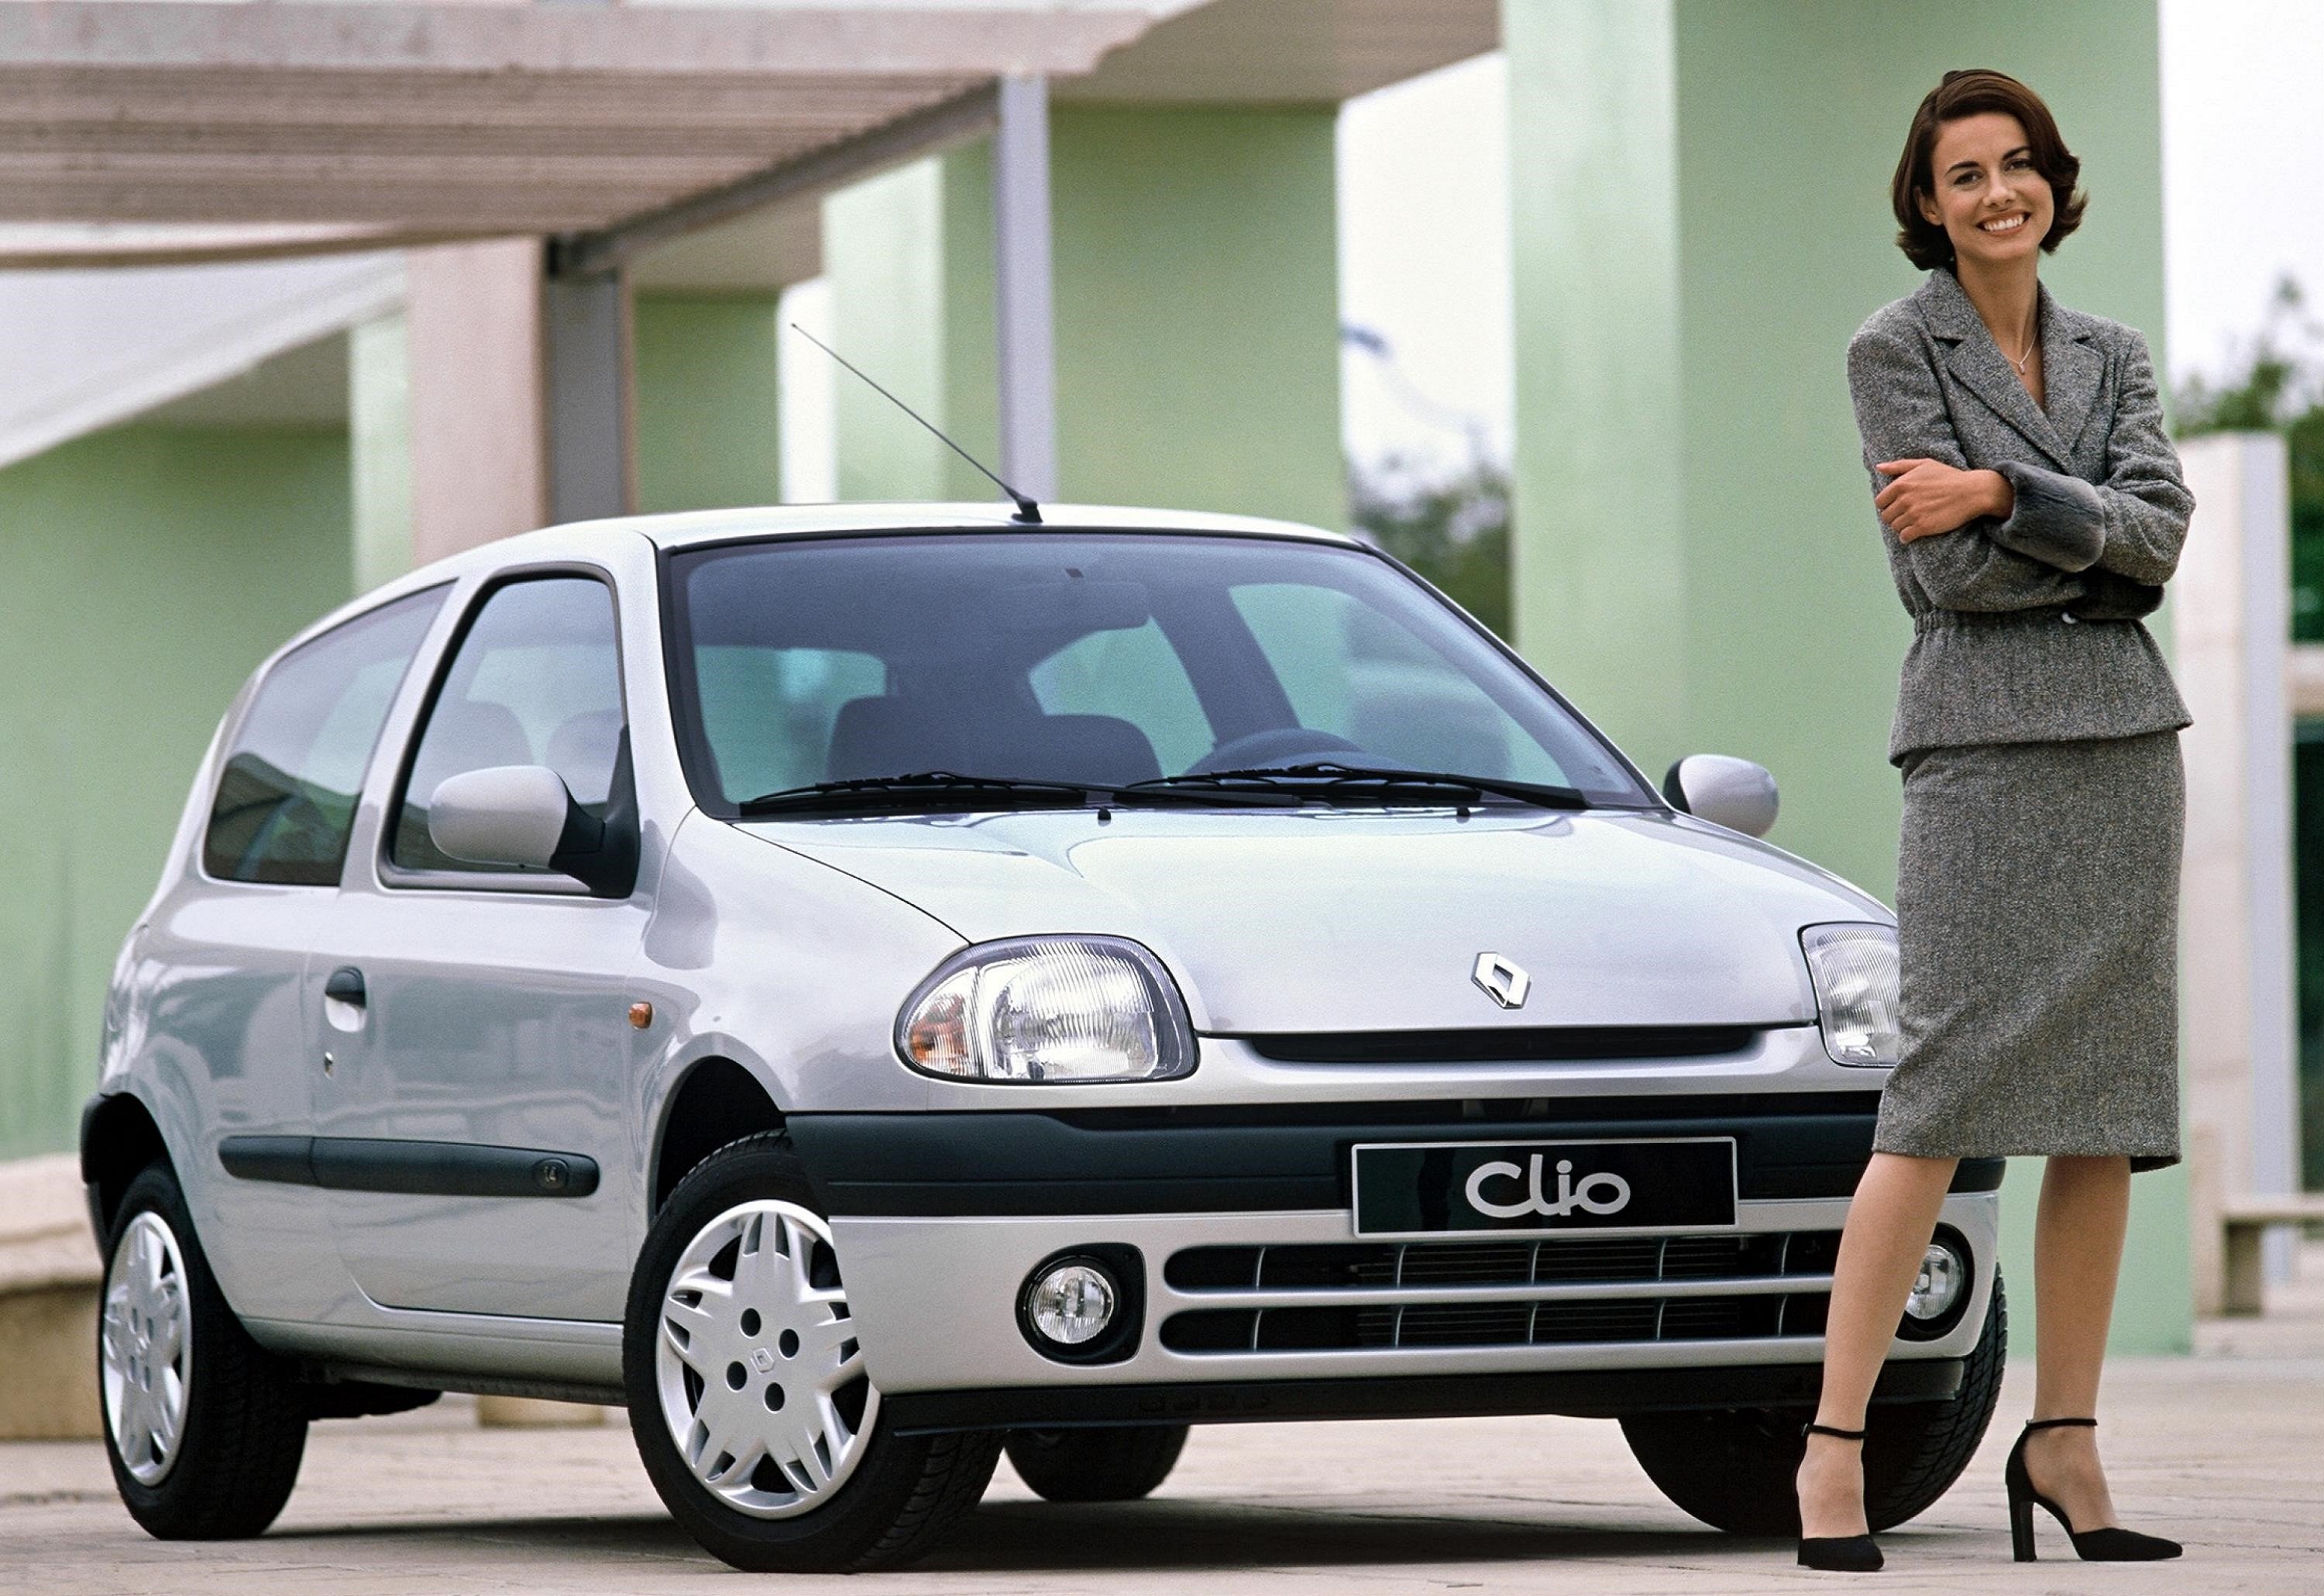 renault, Clio, 3 door, 1998 Wallpapers HD / Desktop and Mobile Backgrounds.